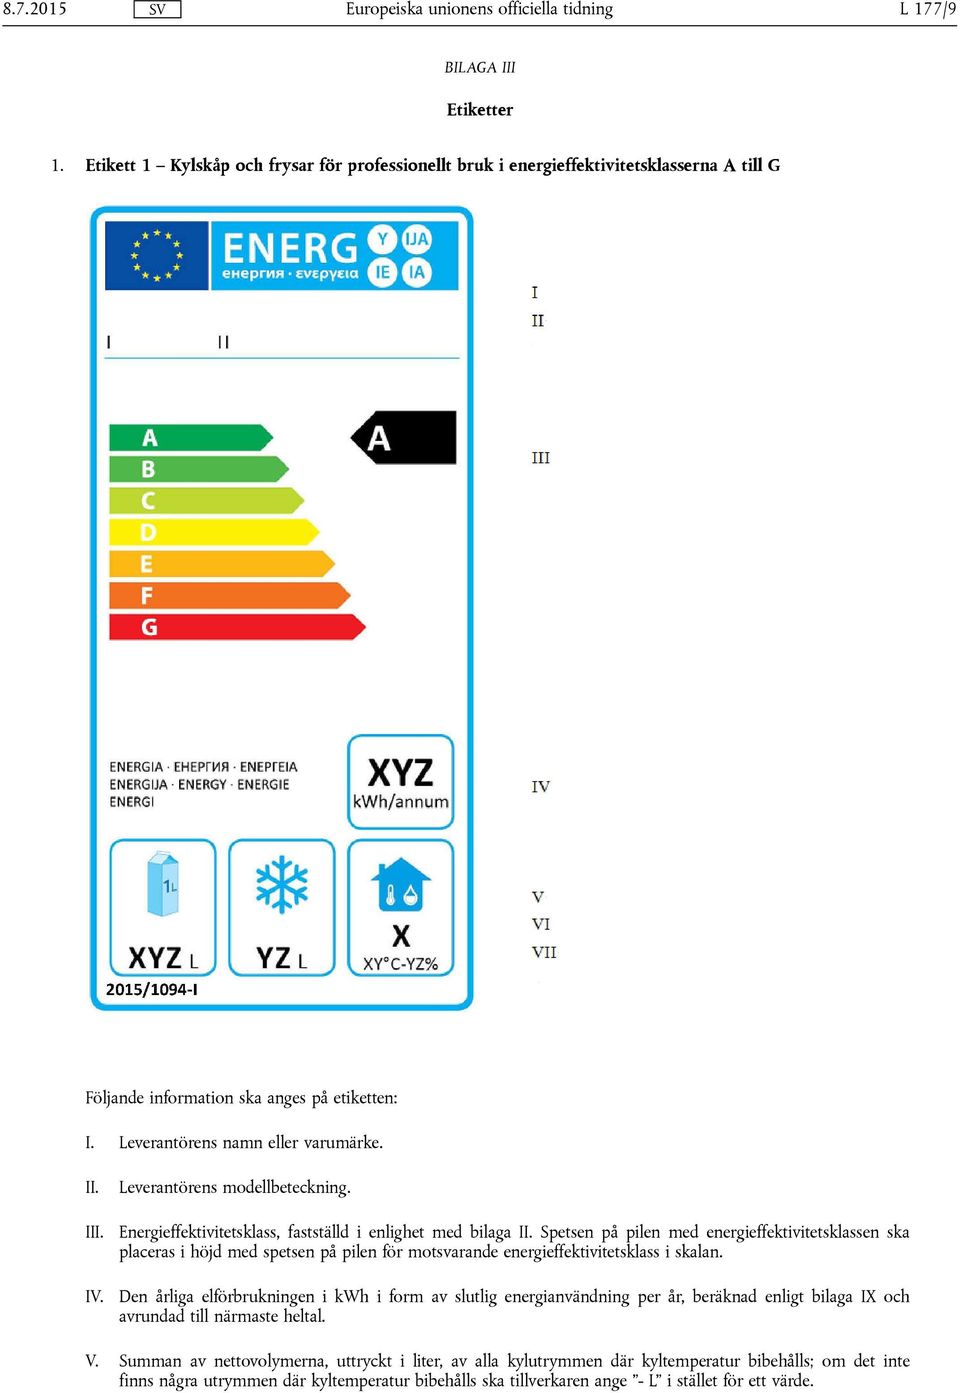 Spetsen på pilen med energieffektivitetsklassen ska placeras i höjd med spetsen på pilen för motsvarande energieffektivitetsklass i skalan.